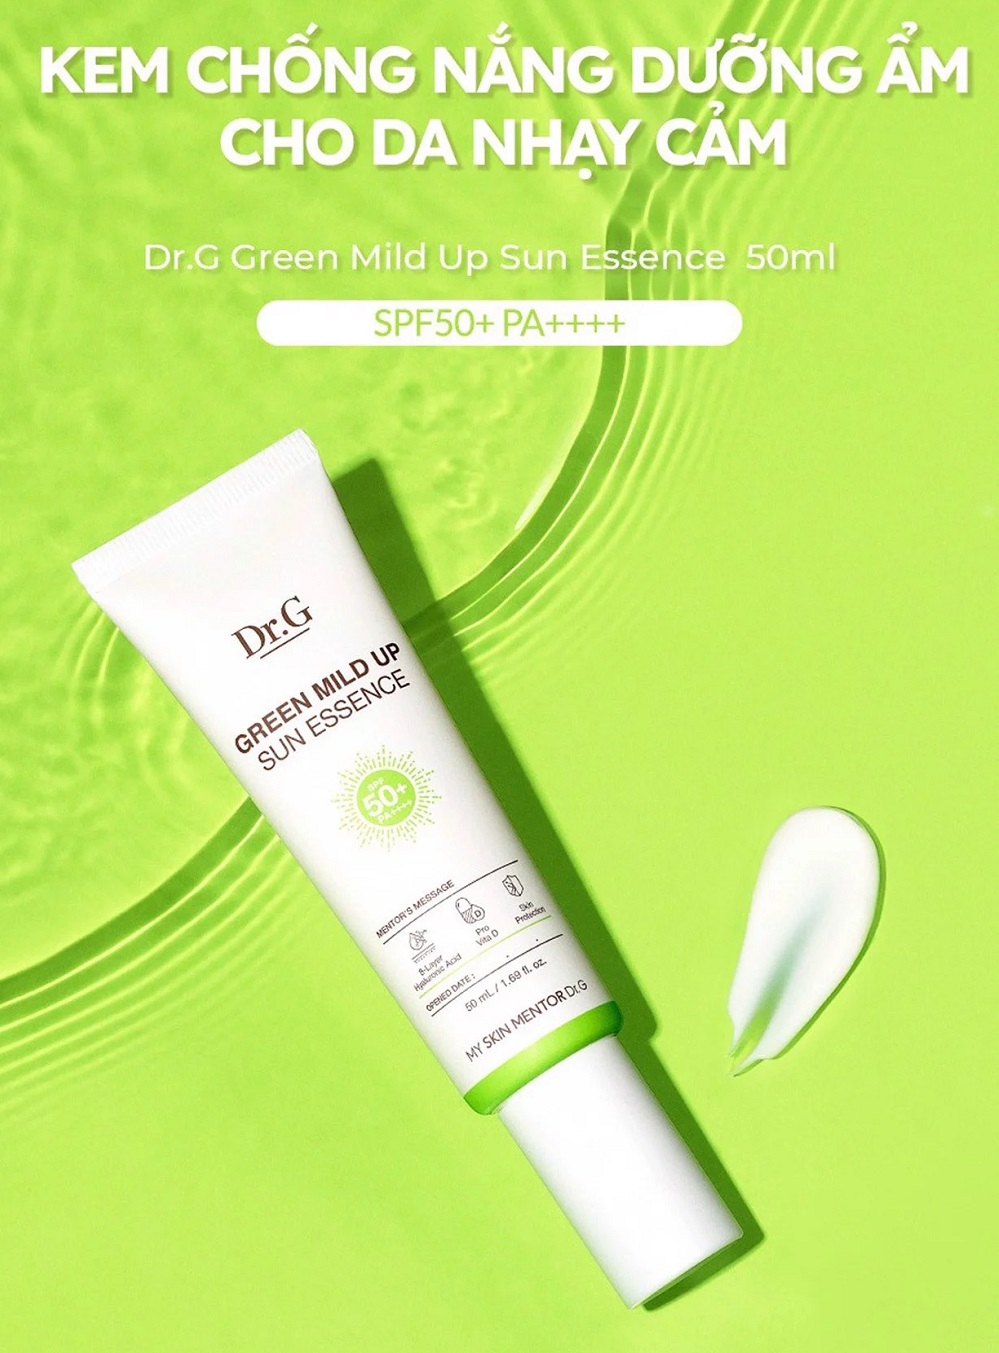 Kem Chống Nắng Dr.G Green Mild Up Sun Essence SPF50+ PA++++ 50ml + Tặng 1 Mặt Nạ Sexylook